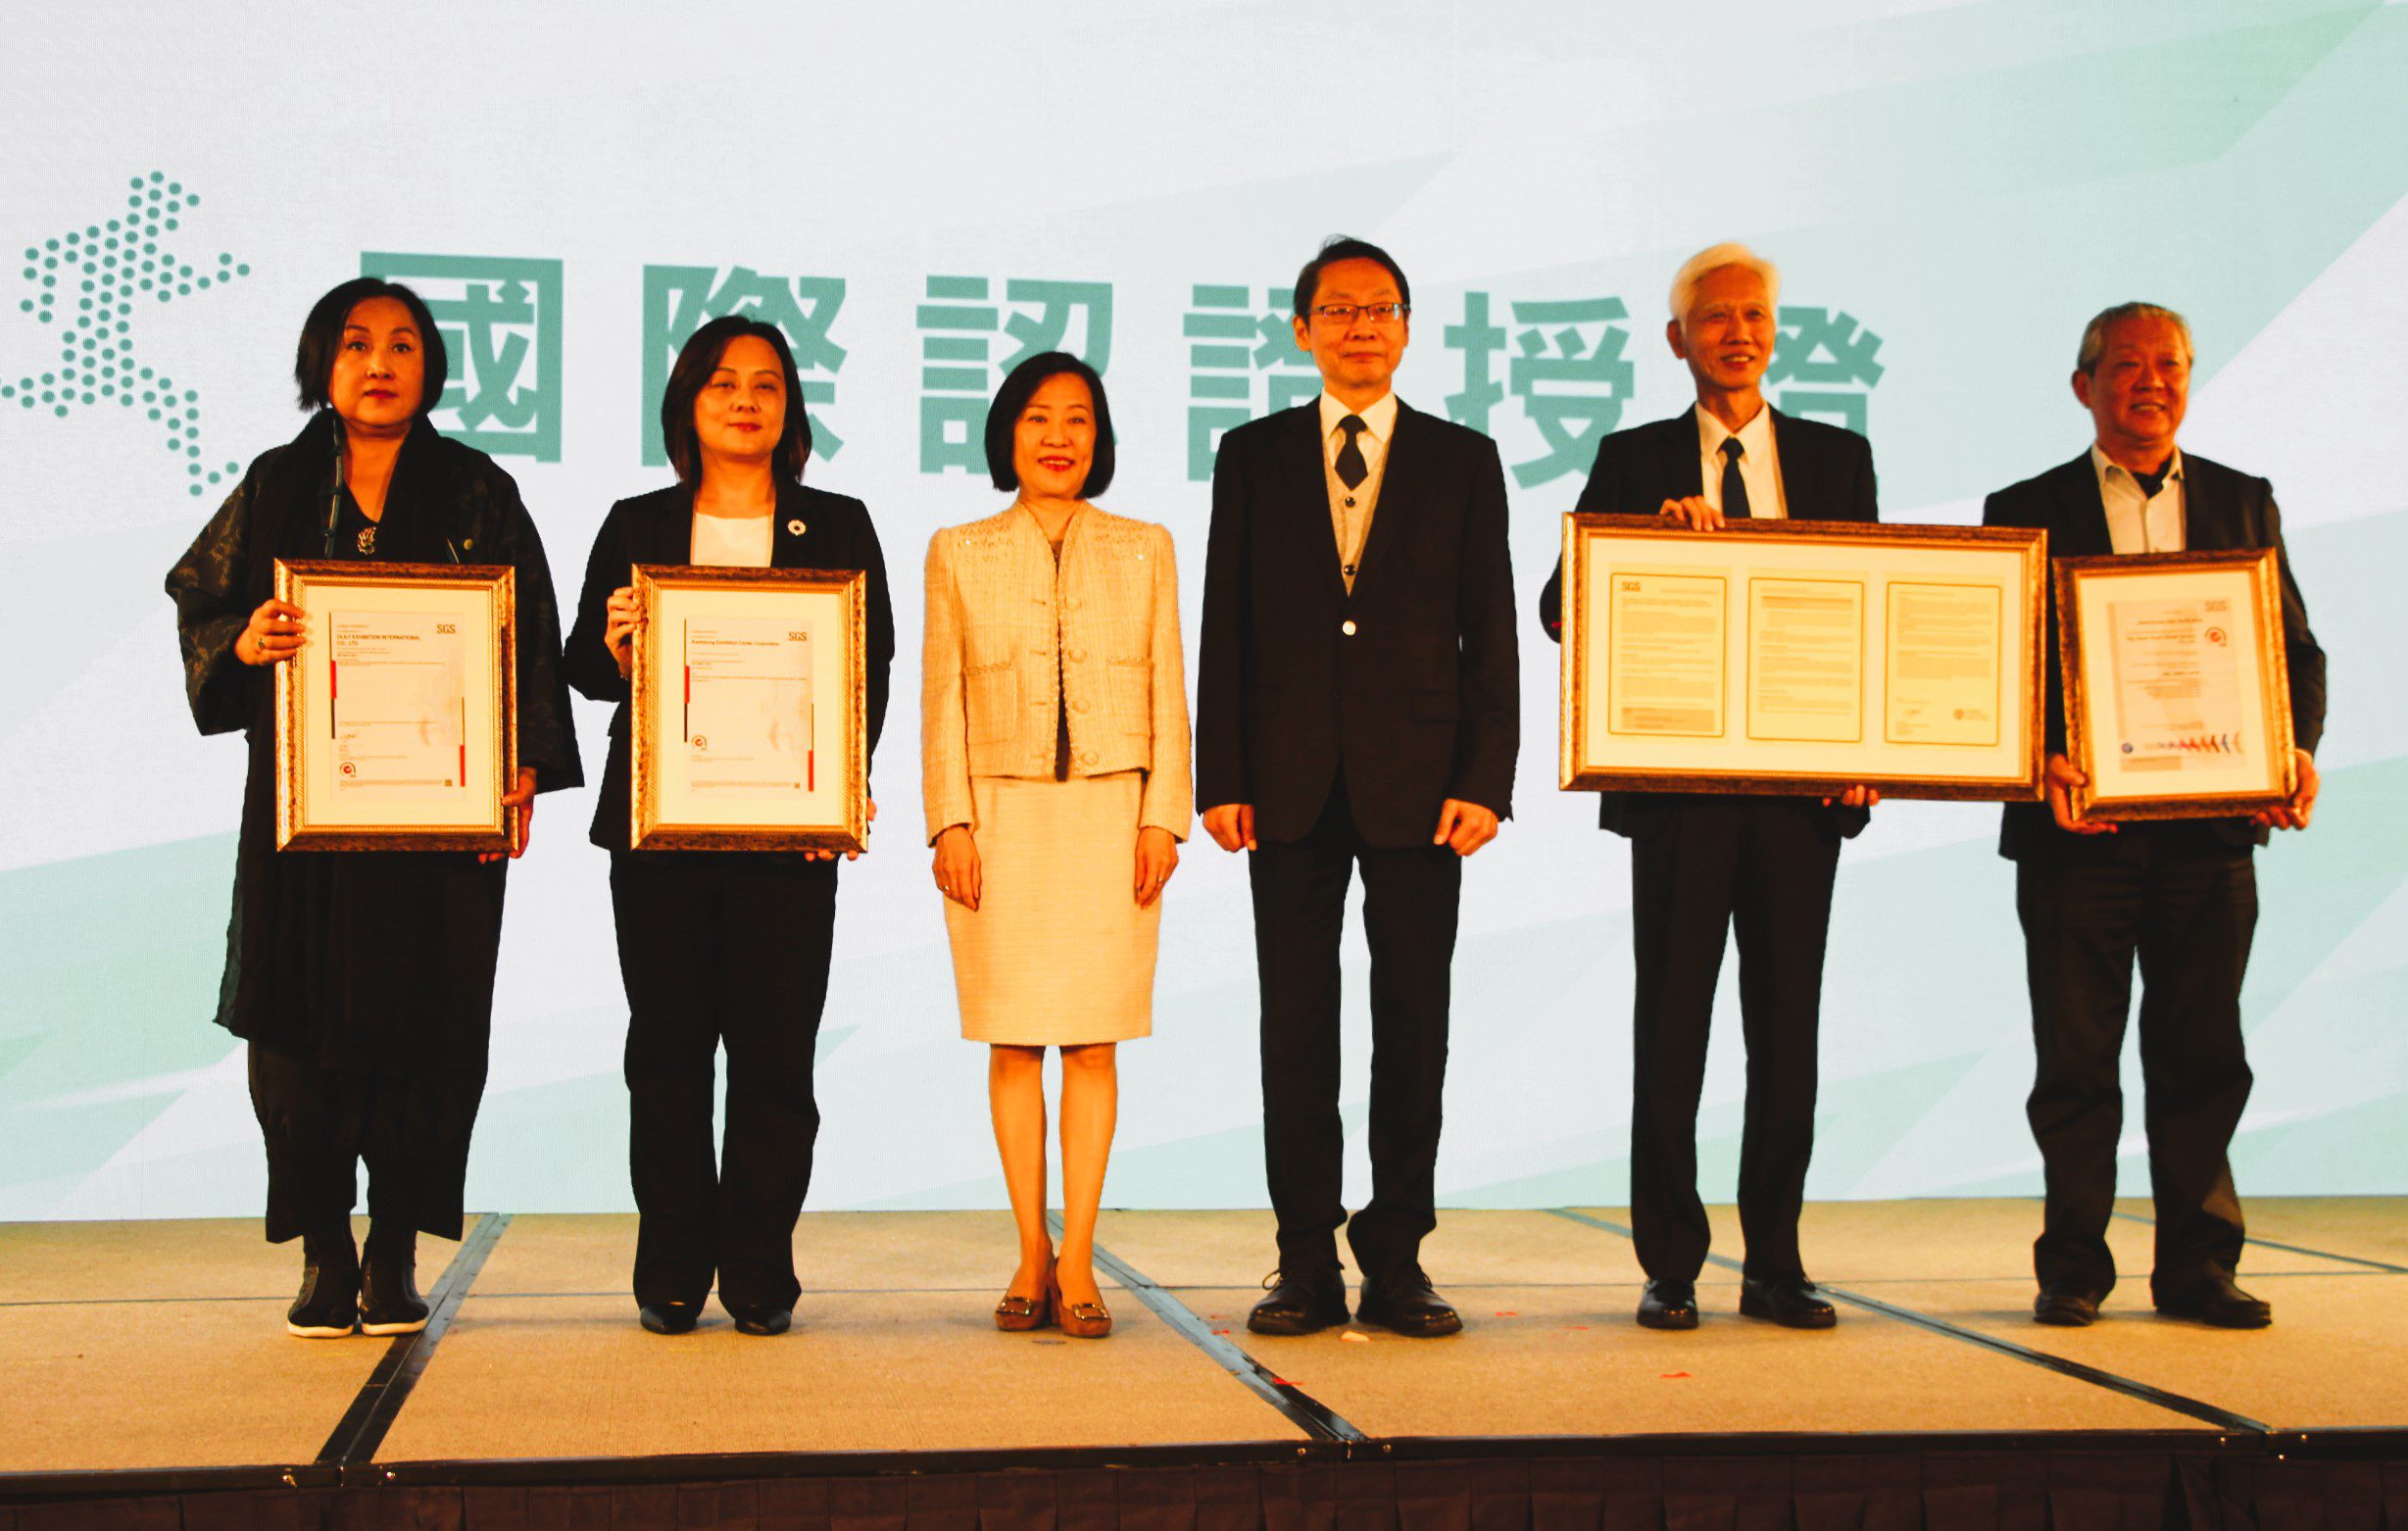 推動會展ESG 全台第一本「展館永續報告書」出爐 - 早安台灣新聞 | Morning Taiwan News